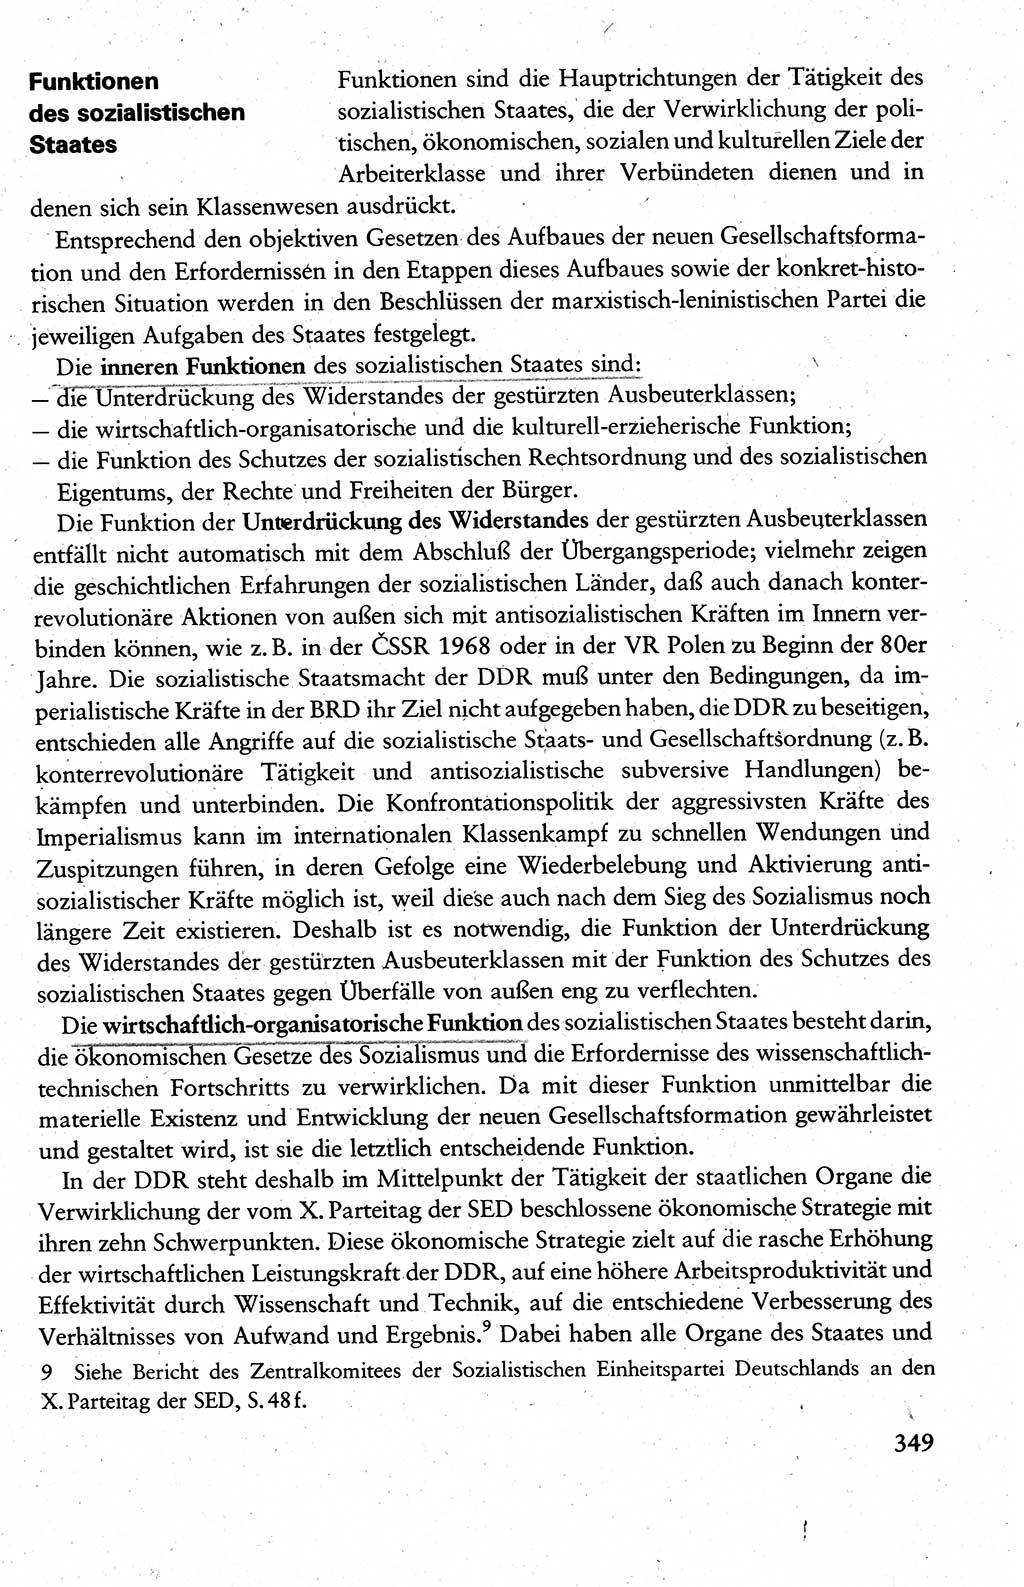 Wissenschaftlicher Kommunismus [Deutsche Demokratische Republik (DDR)], Lehrbuch für das marxistisch-leninistische Grundlagenstudium 1983, Seite 349 (Wiss. Komm. DDR Lb. 1983, S. 349)